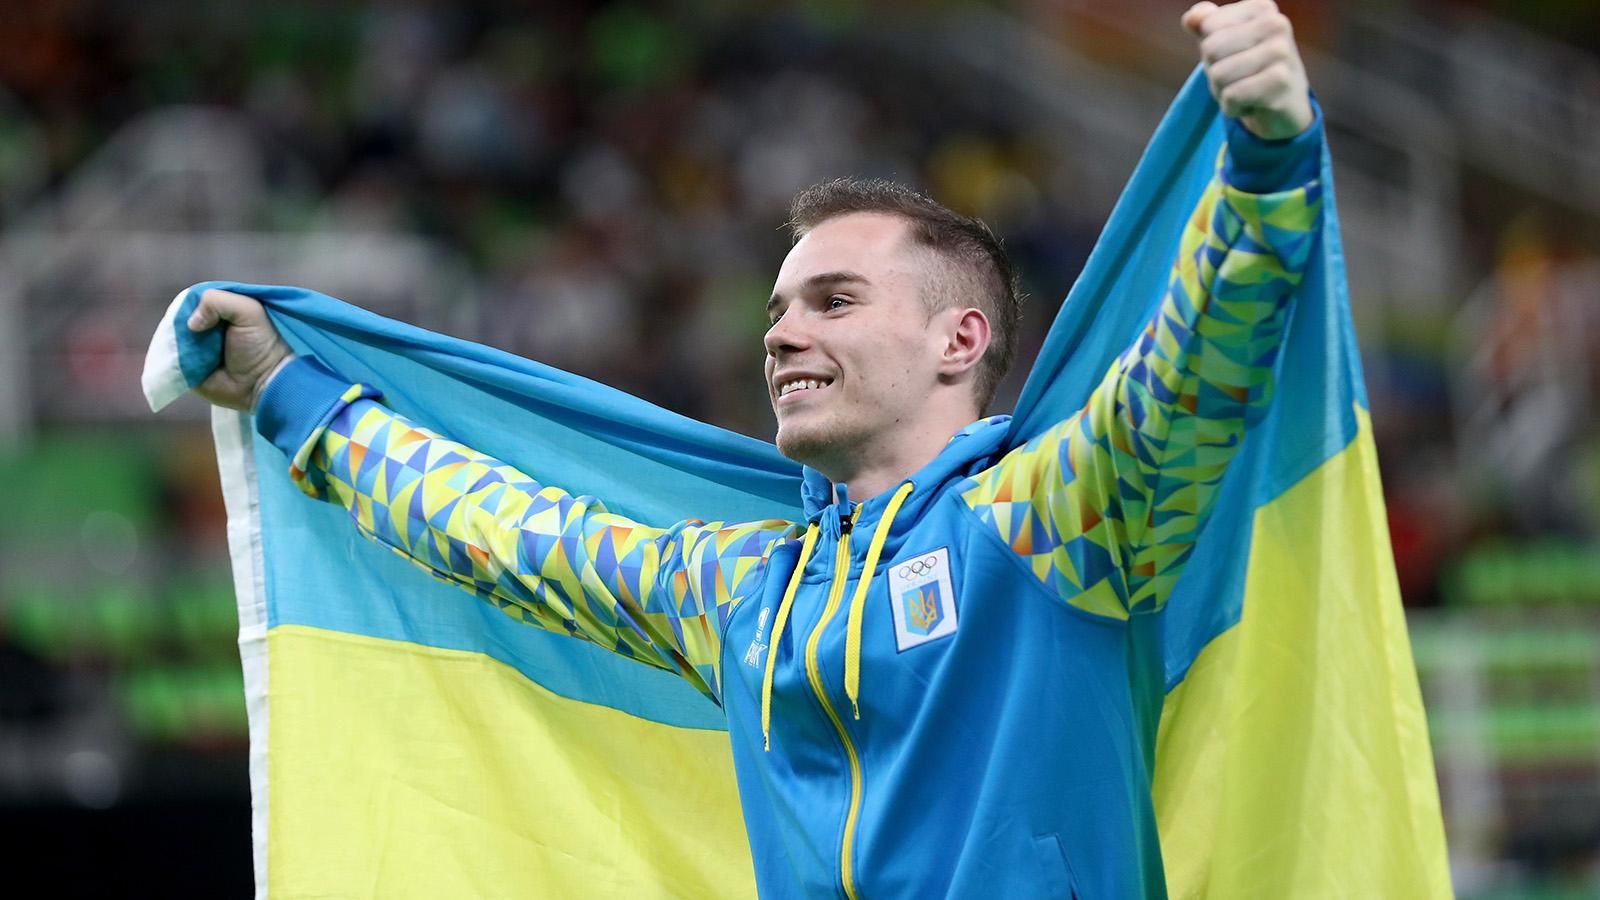 Олимпиада 2016, медальный зачет: триумф США, Украина – в четвертом десятке